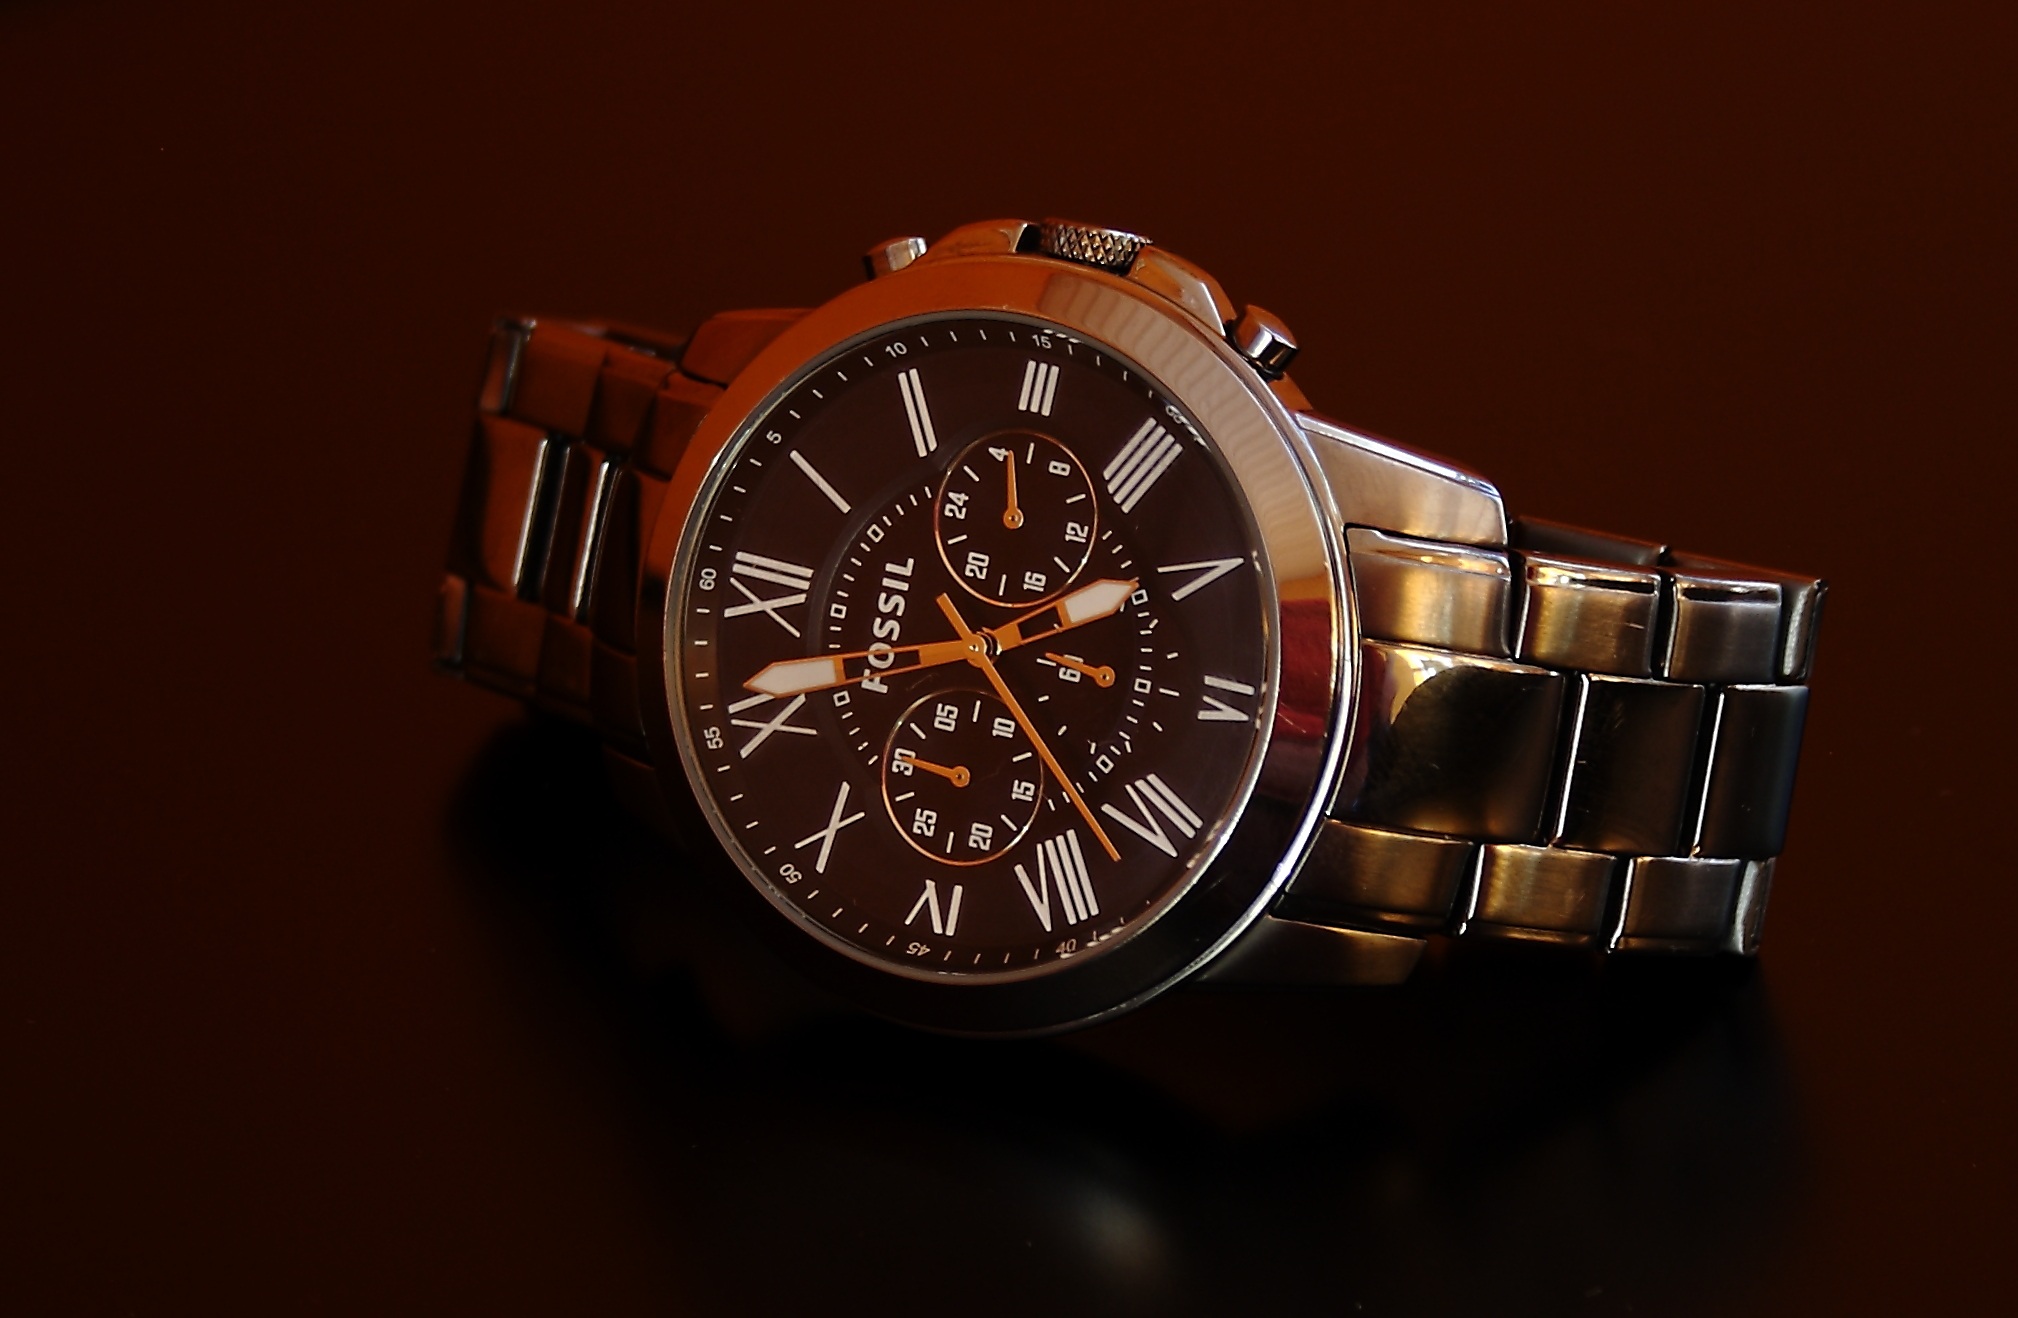 Men's wrist watch by Fossil by SteenJepsen